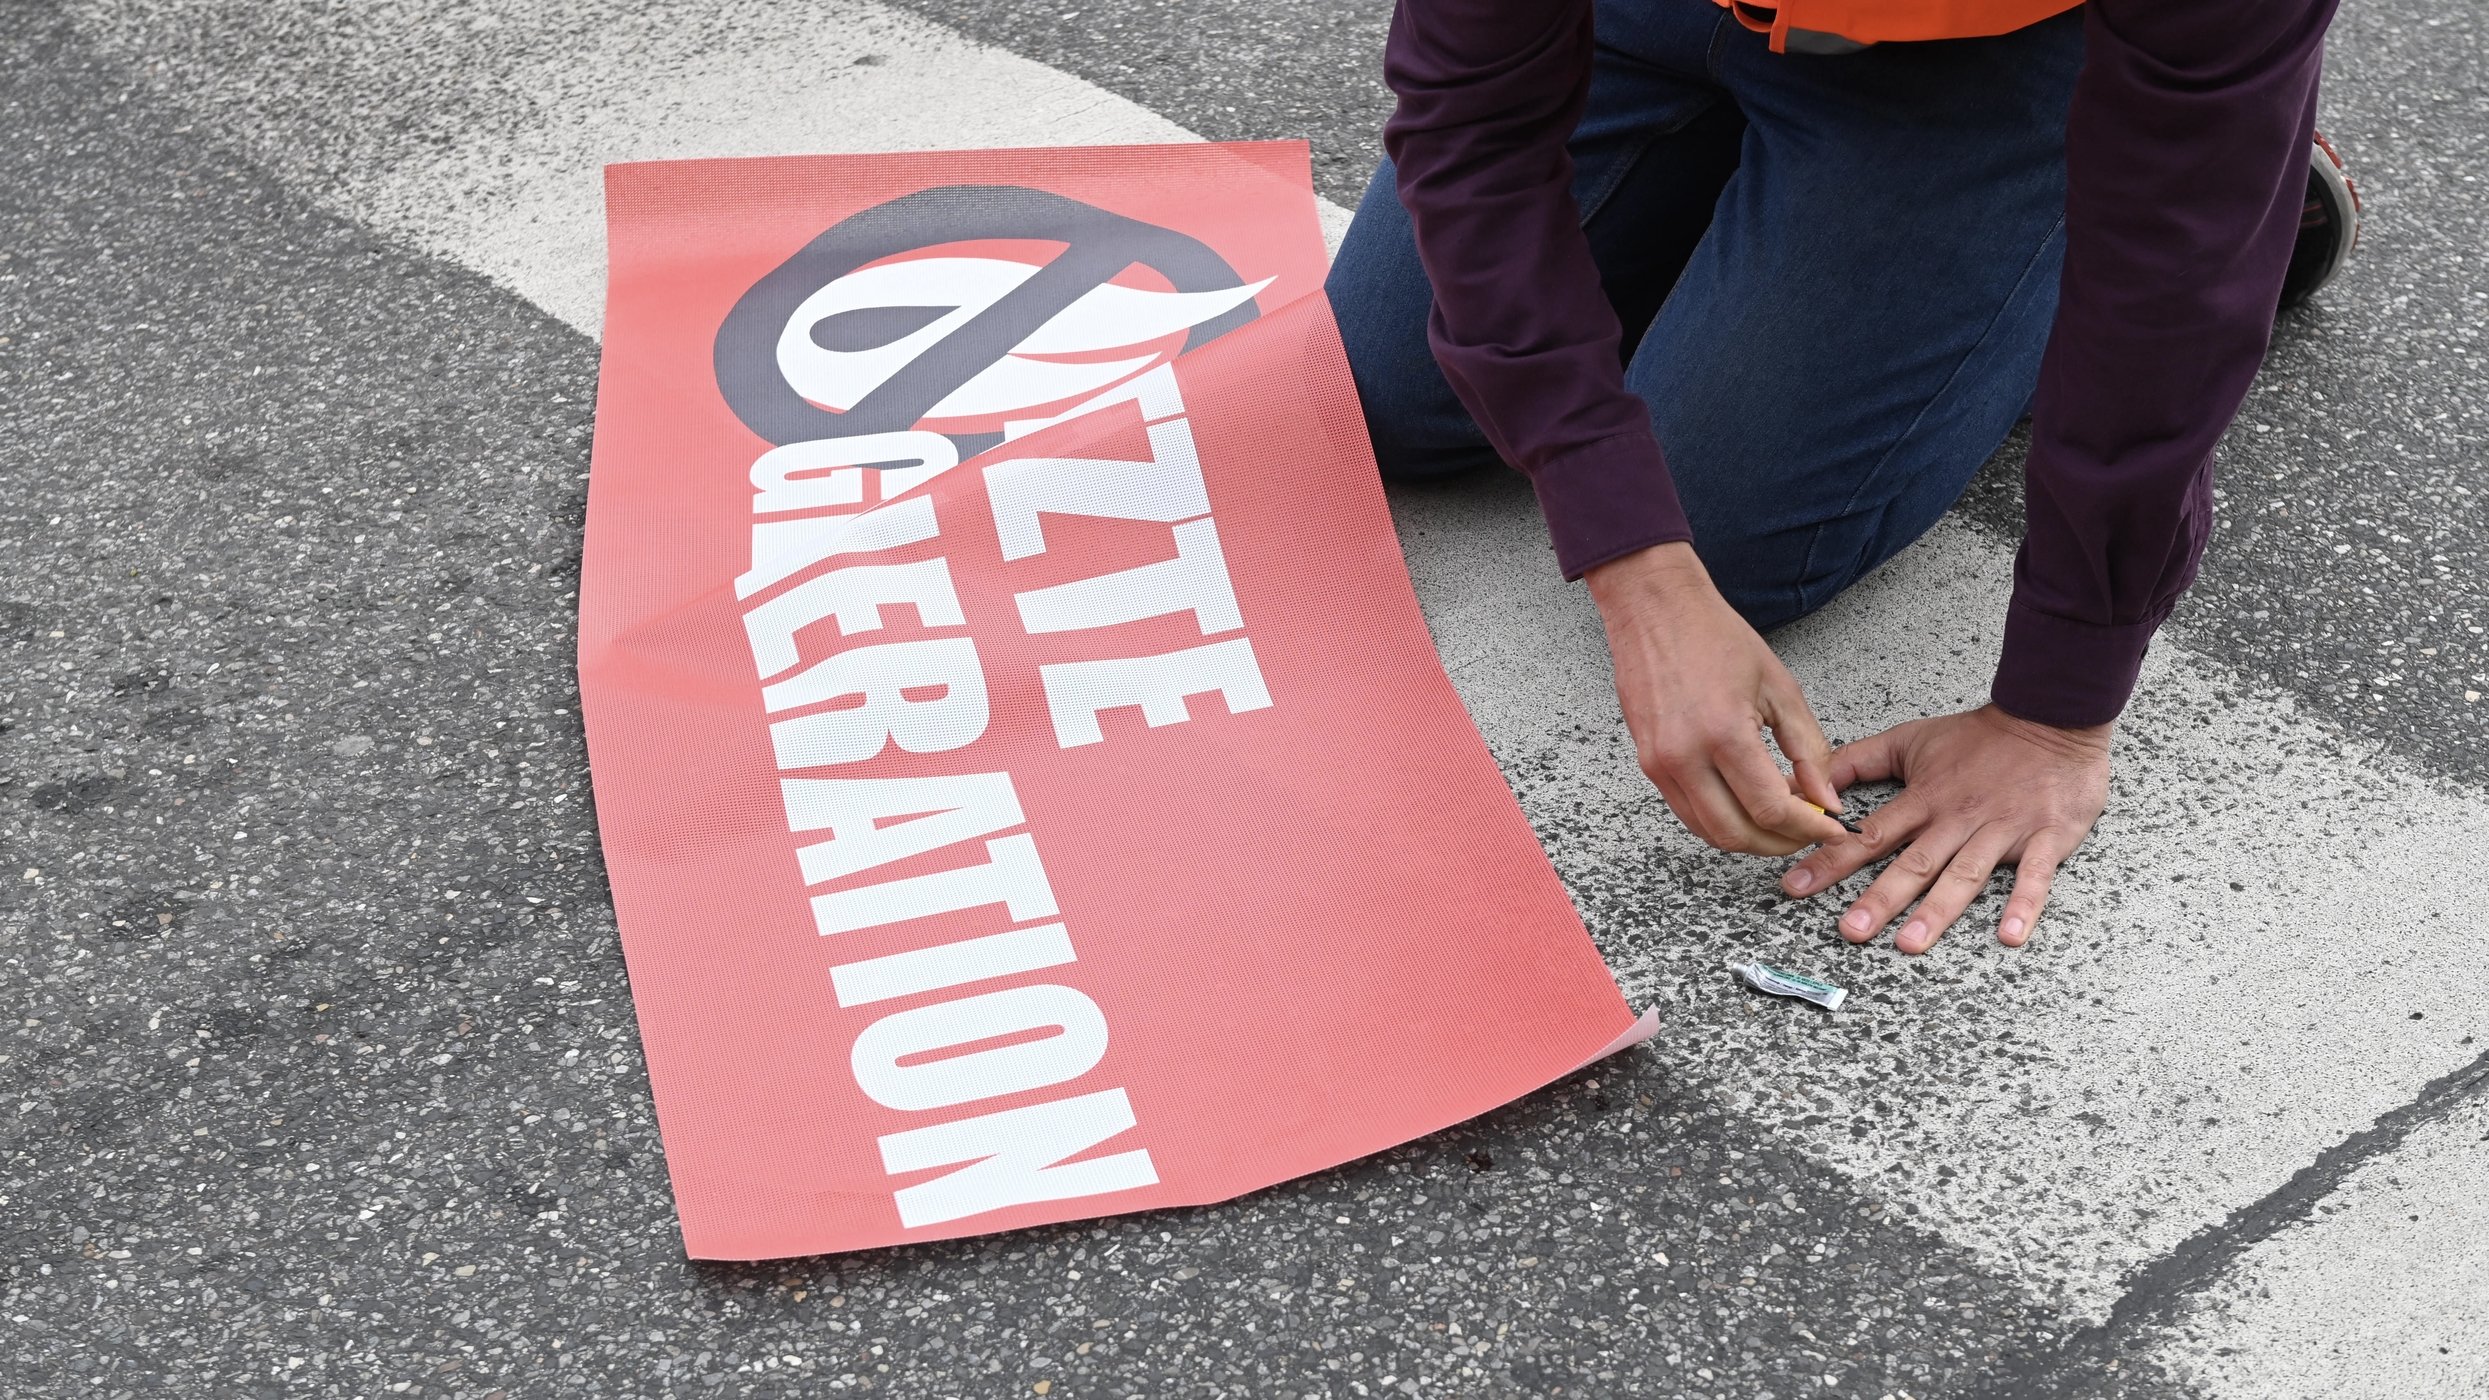 Blockade-Aktion eines Mitglieds der "Letzten Generation"